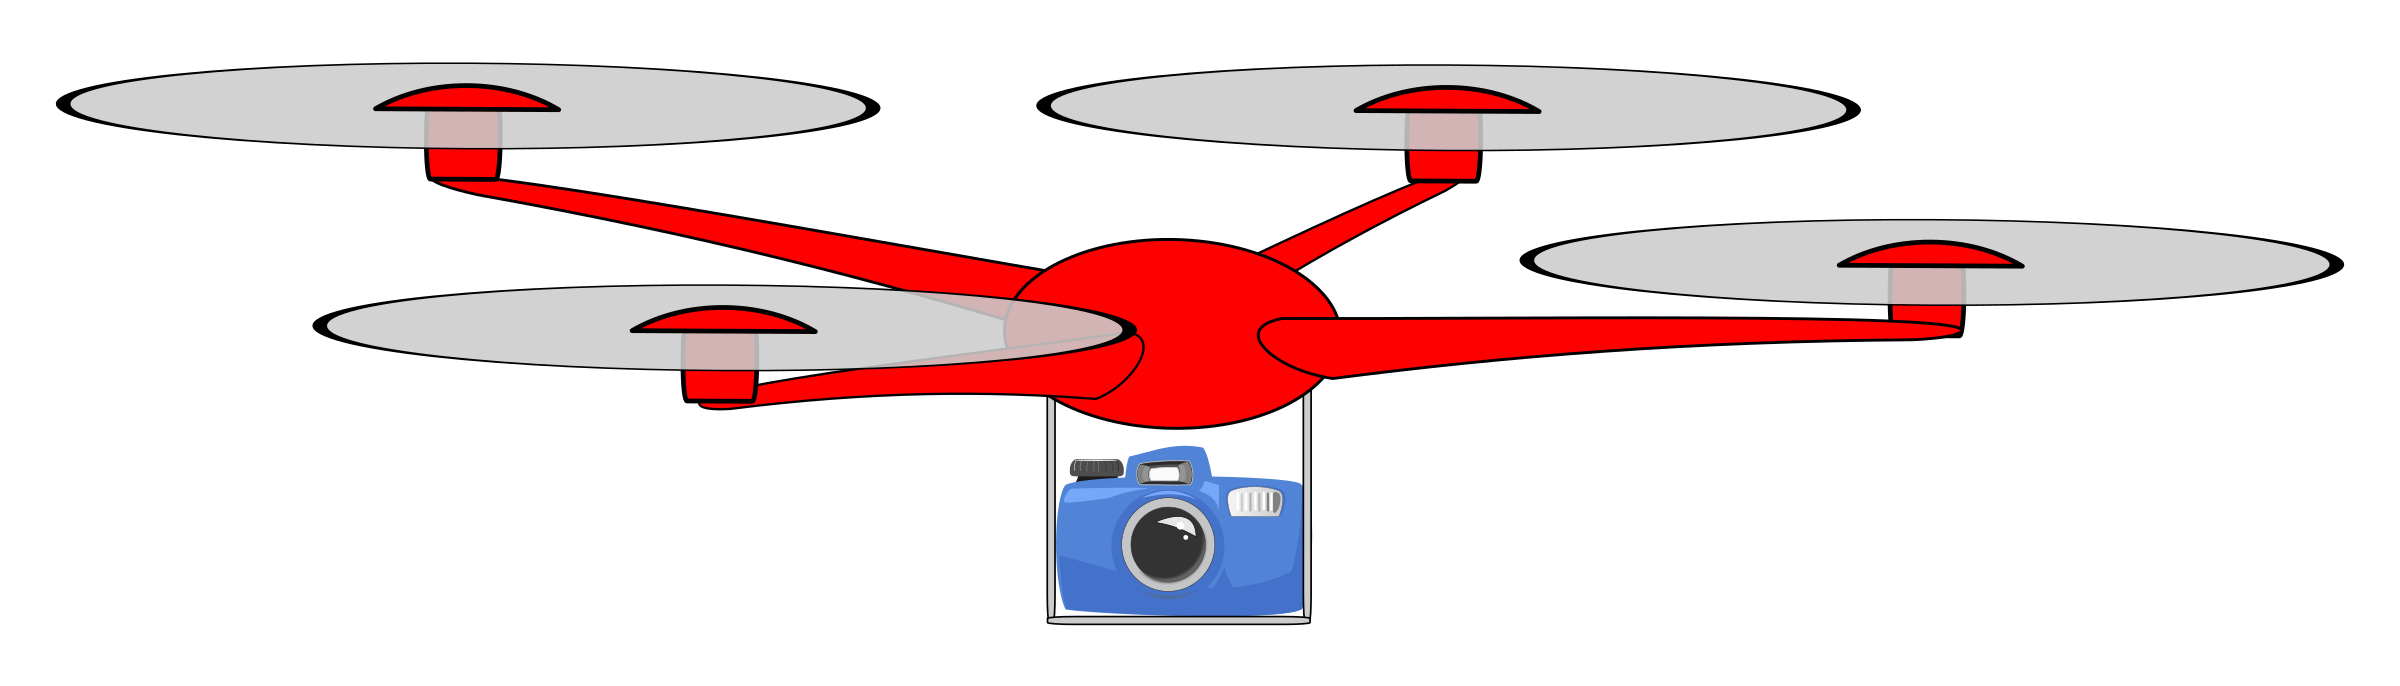 drone clipart small